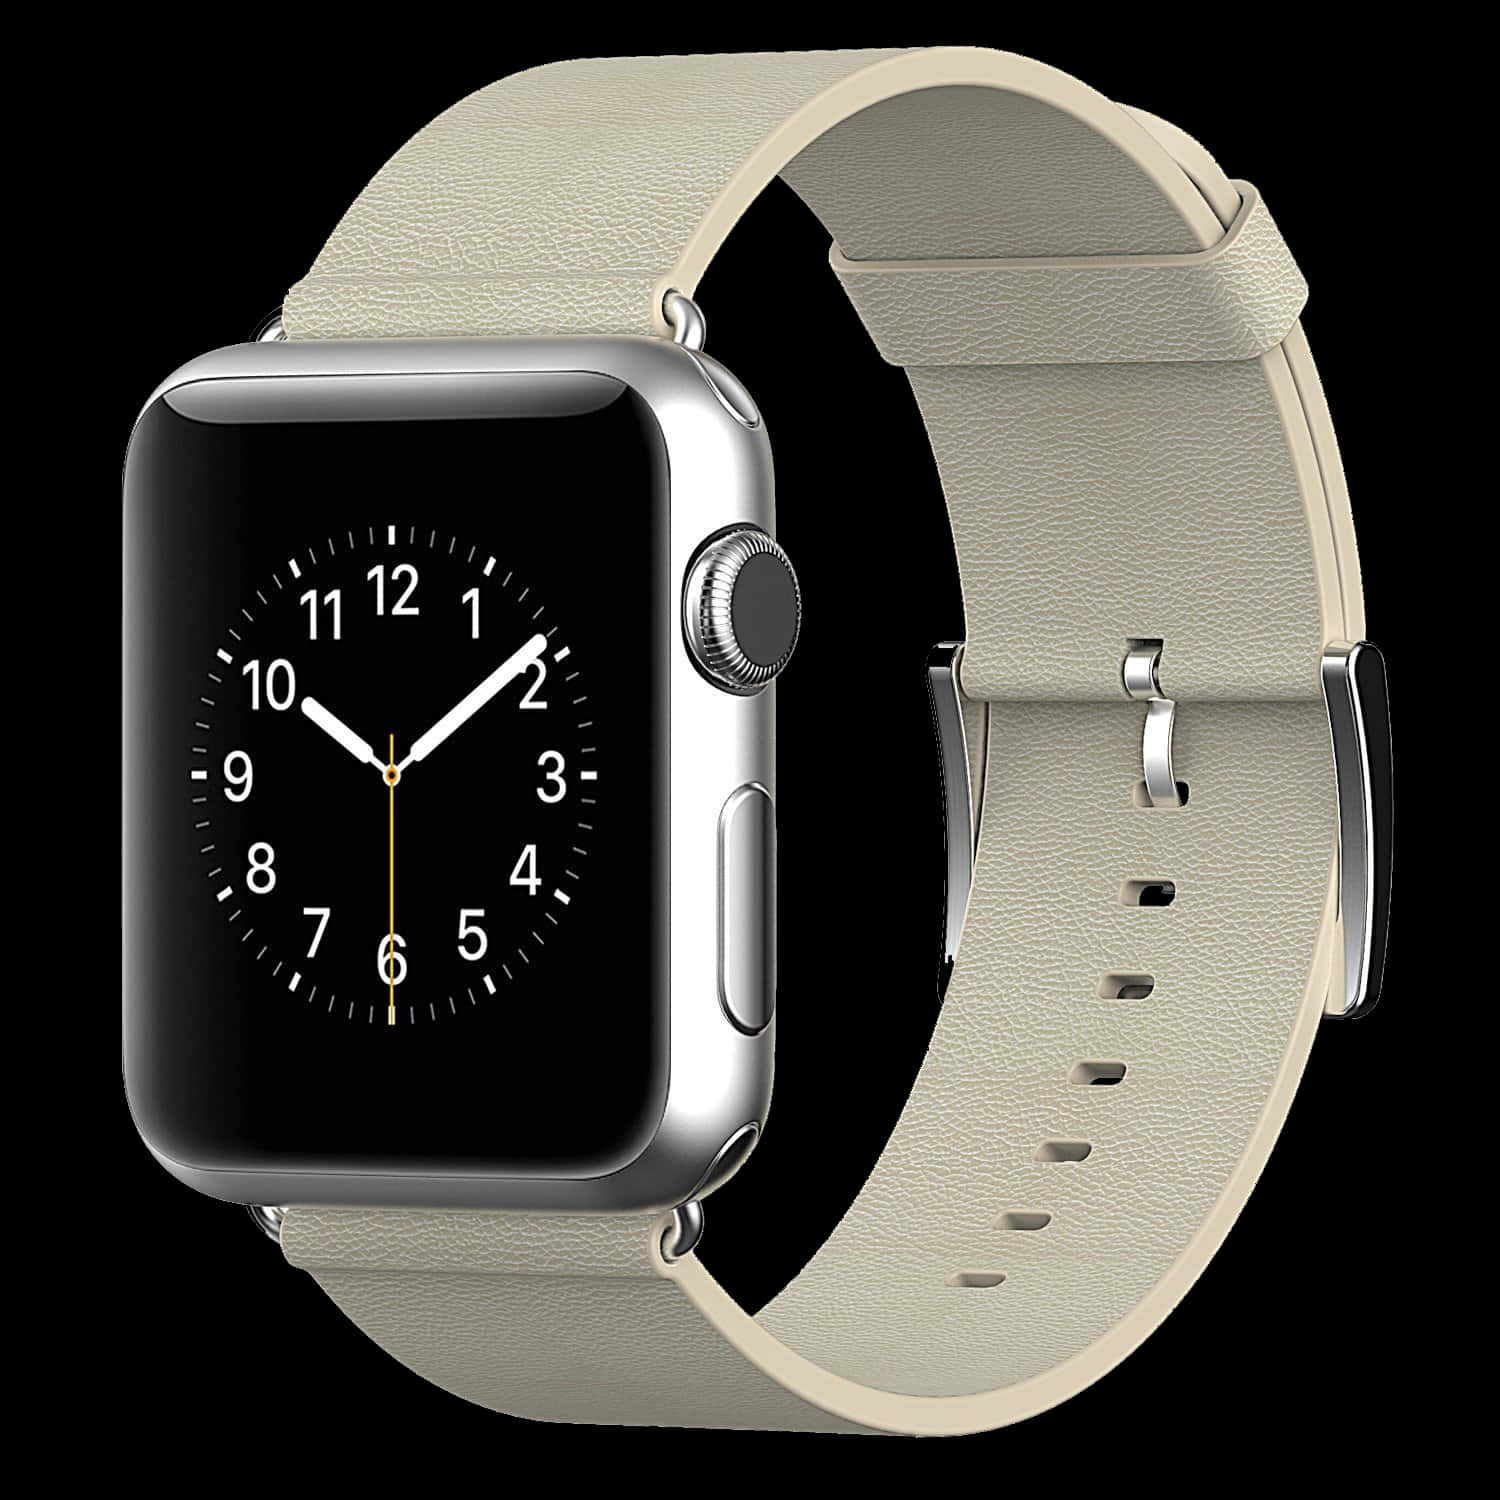 Mantentea La Vanguardia De La Tendencia Con El Apple Watch, El Dispositivo Portátil Más Innovador Del Mundo.